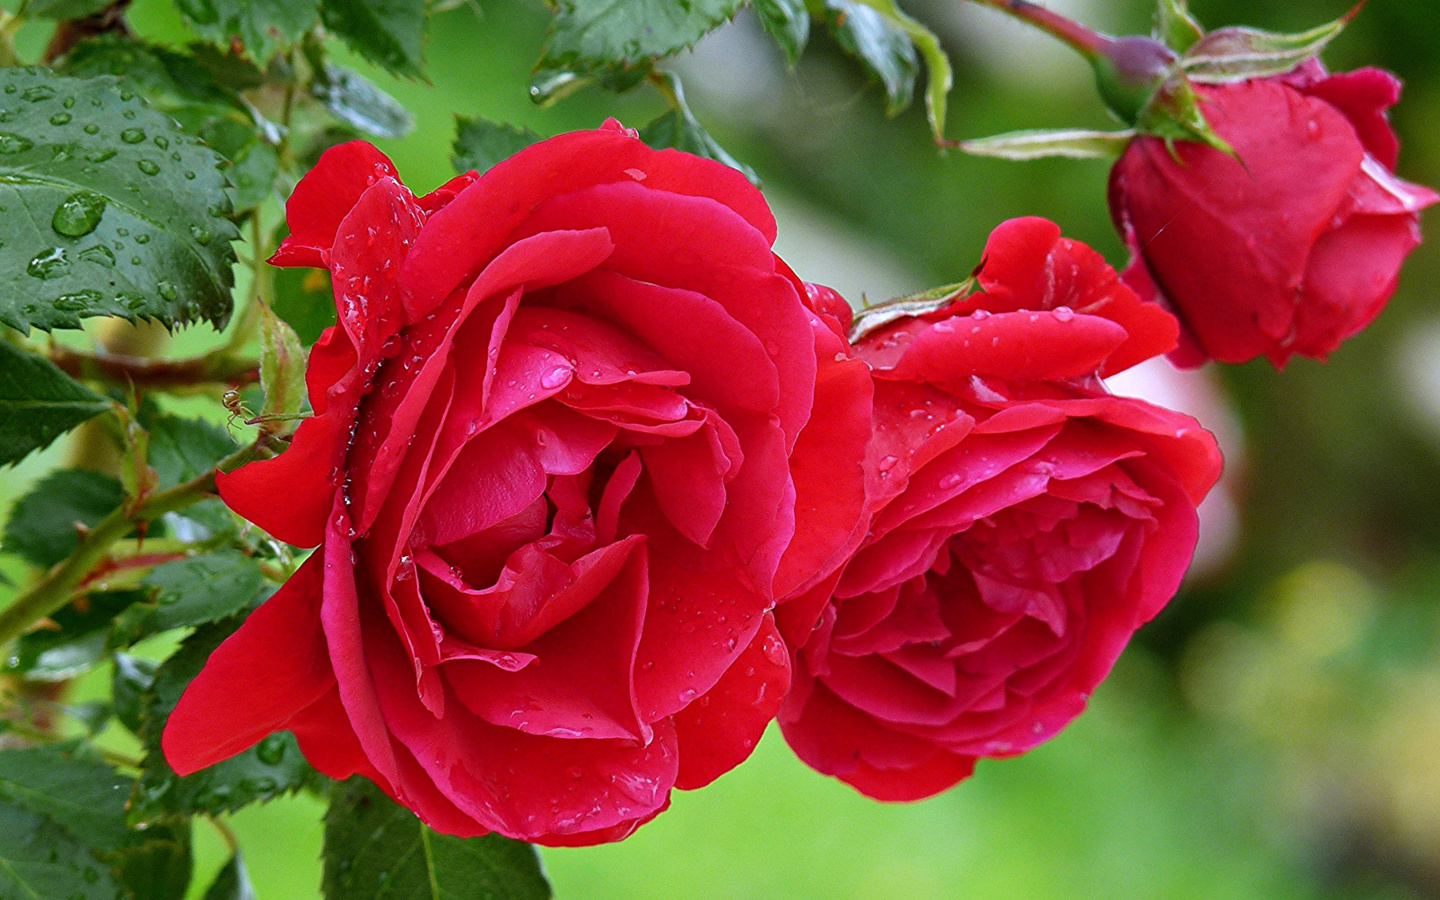 Sfondi Red rosebush 1440x900